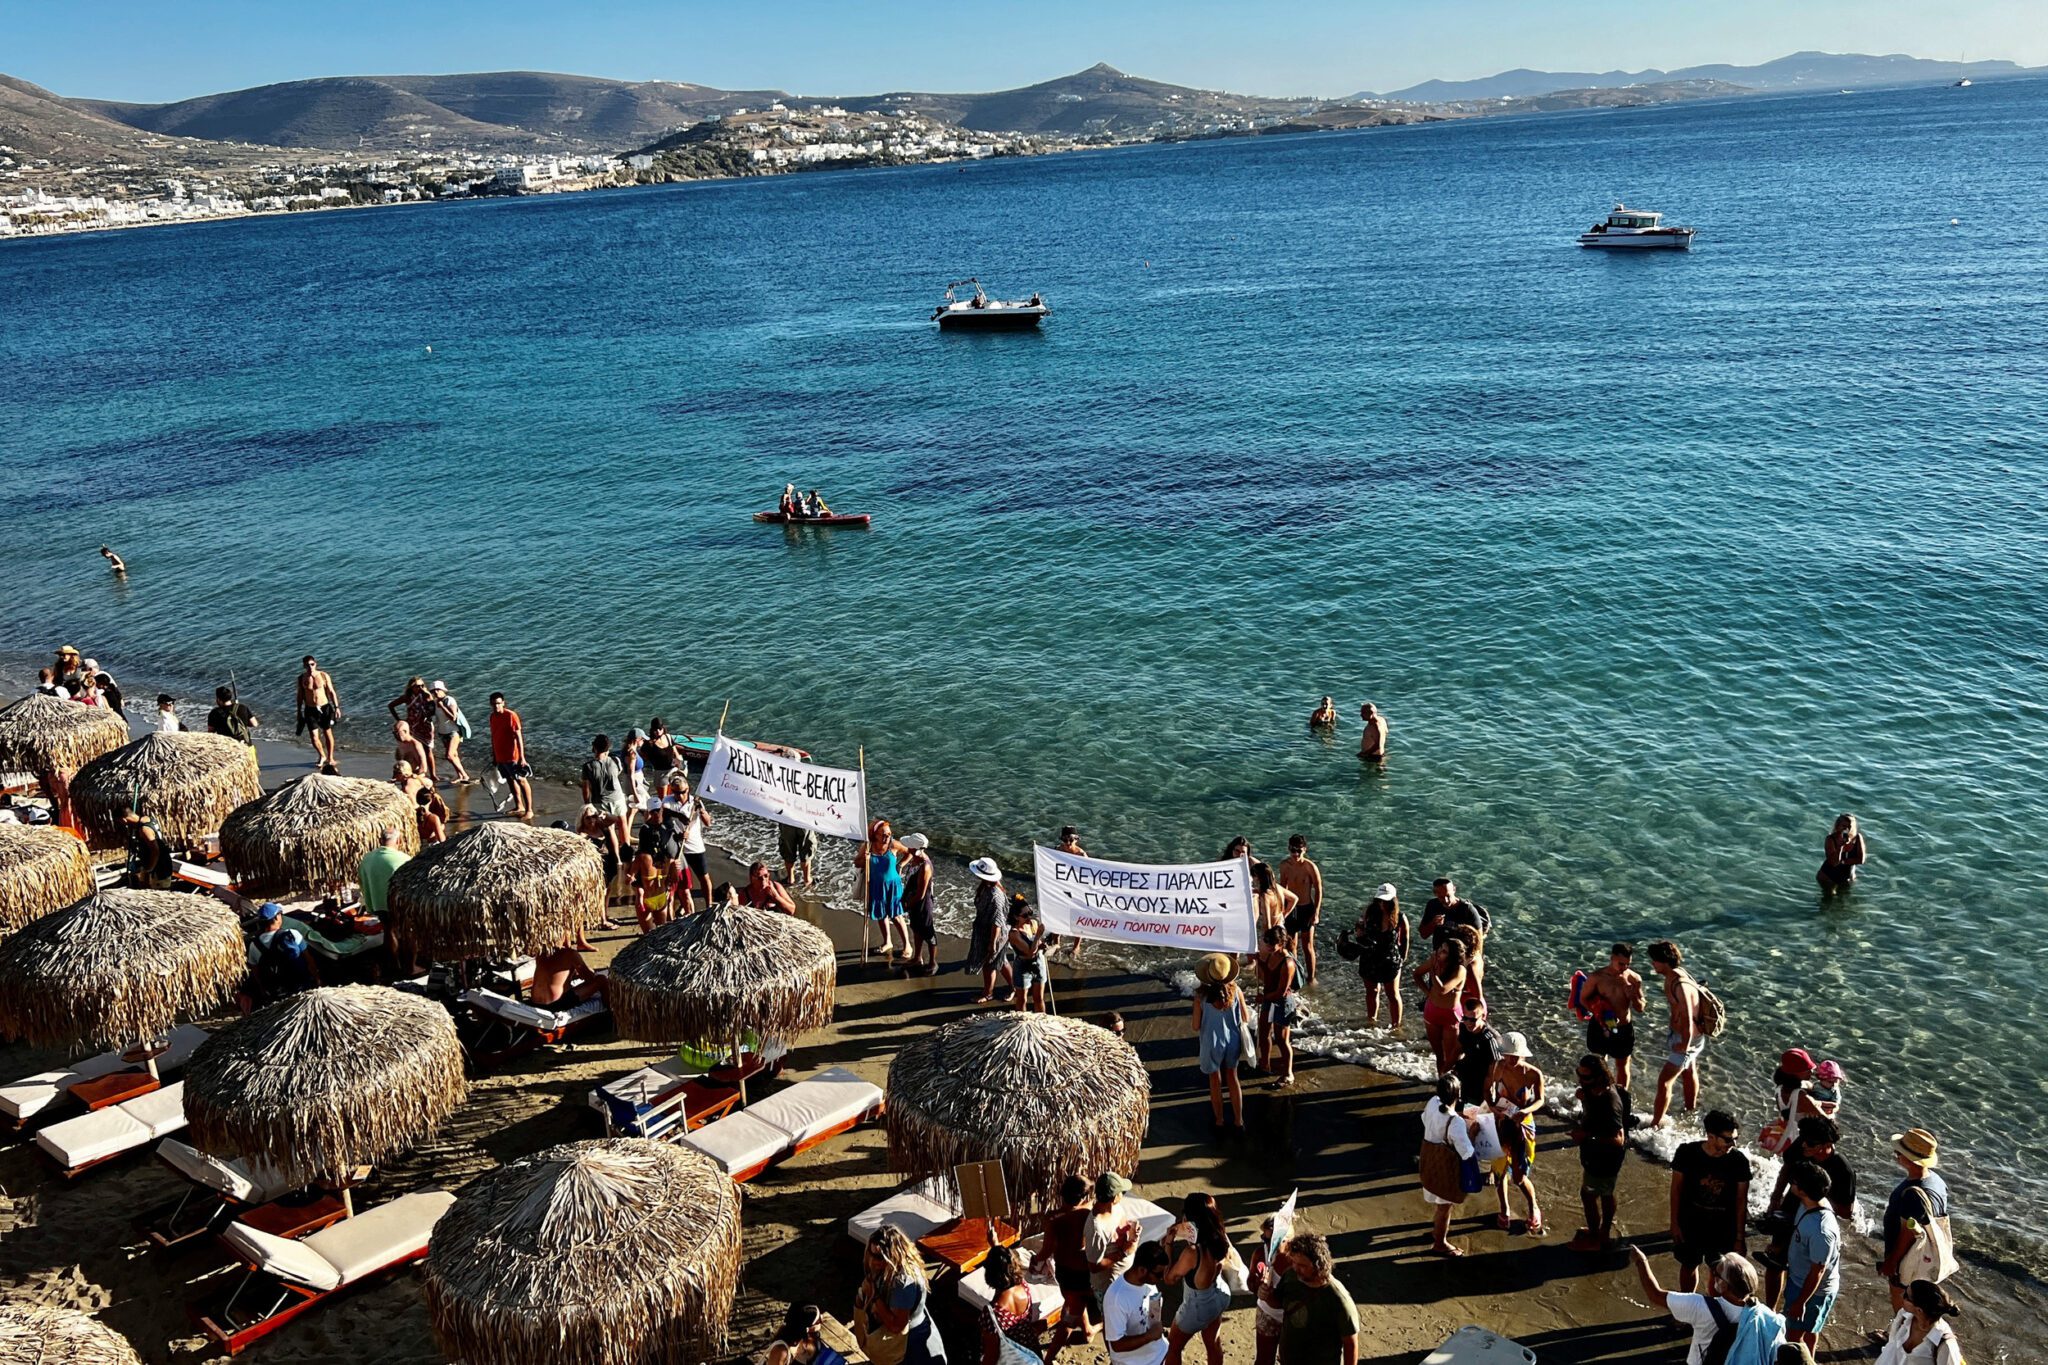 Griekse ‘handdoekbeweging’ protesteert tegen golf van dure zonnebanken langs populaire stranden